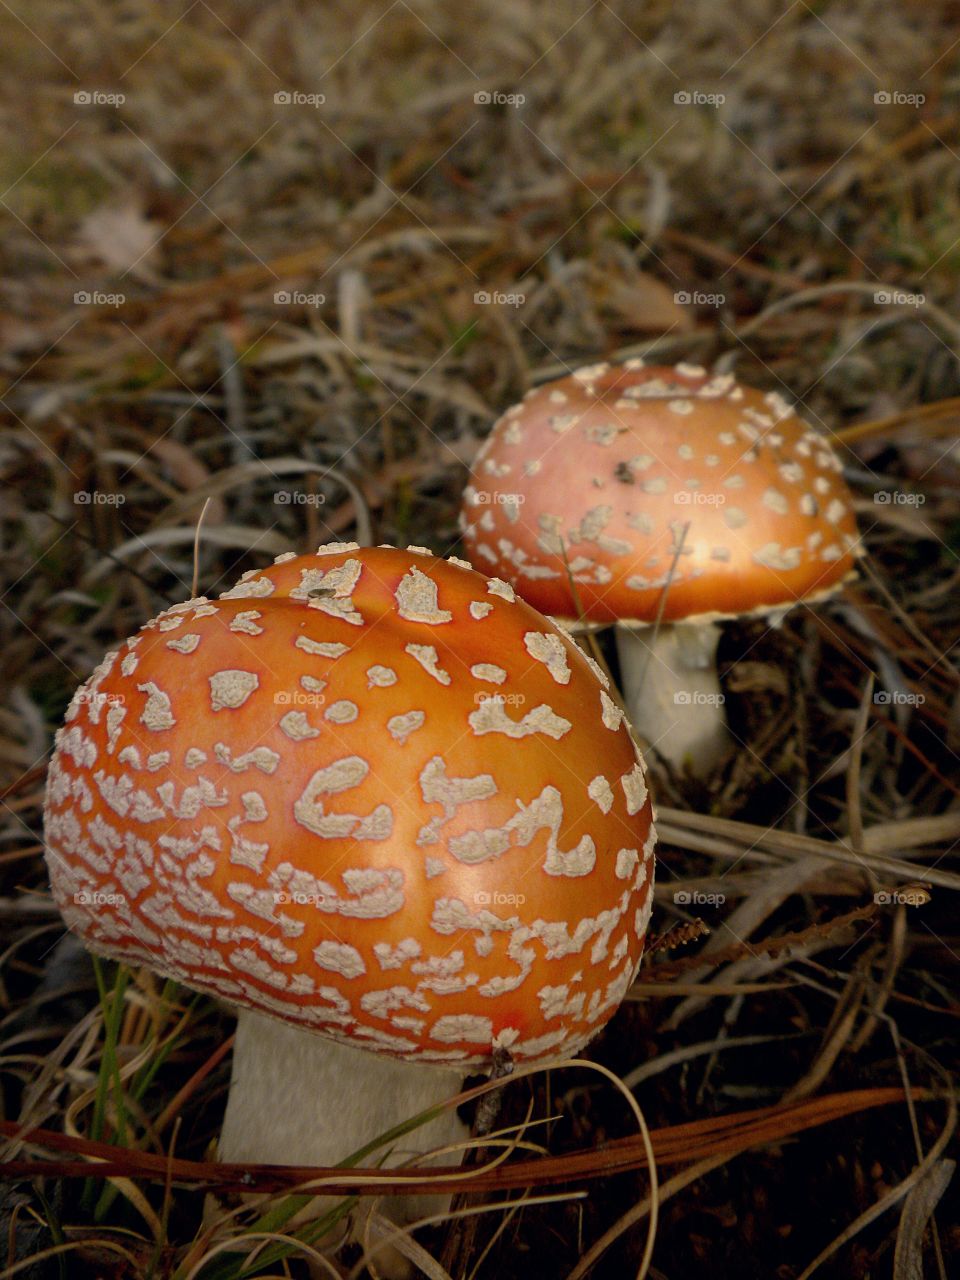 orange fungus